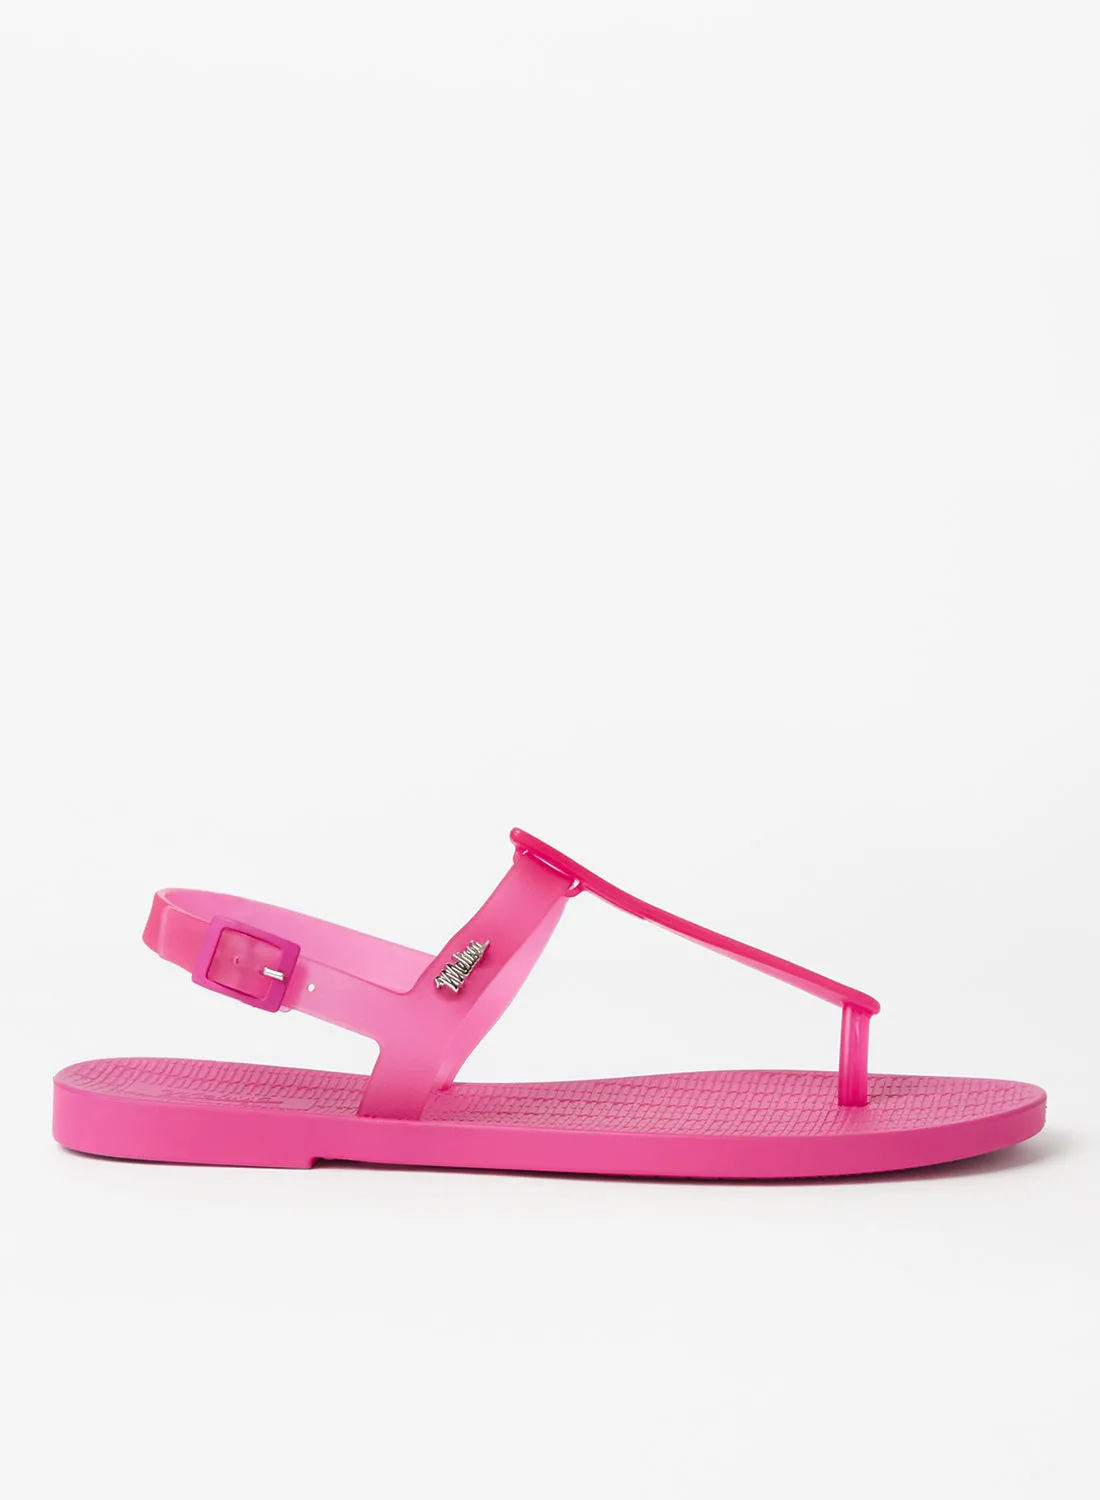 melissa Sun Ventura Flat Sandals Pink